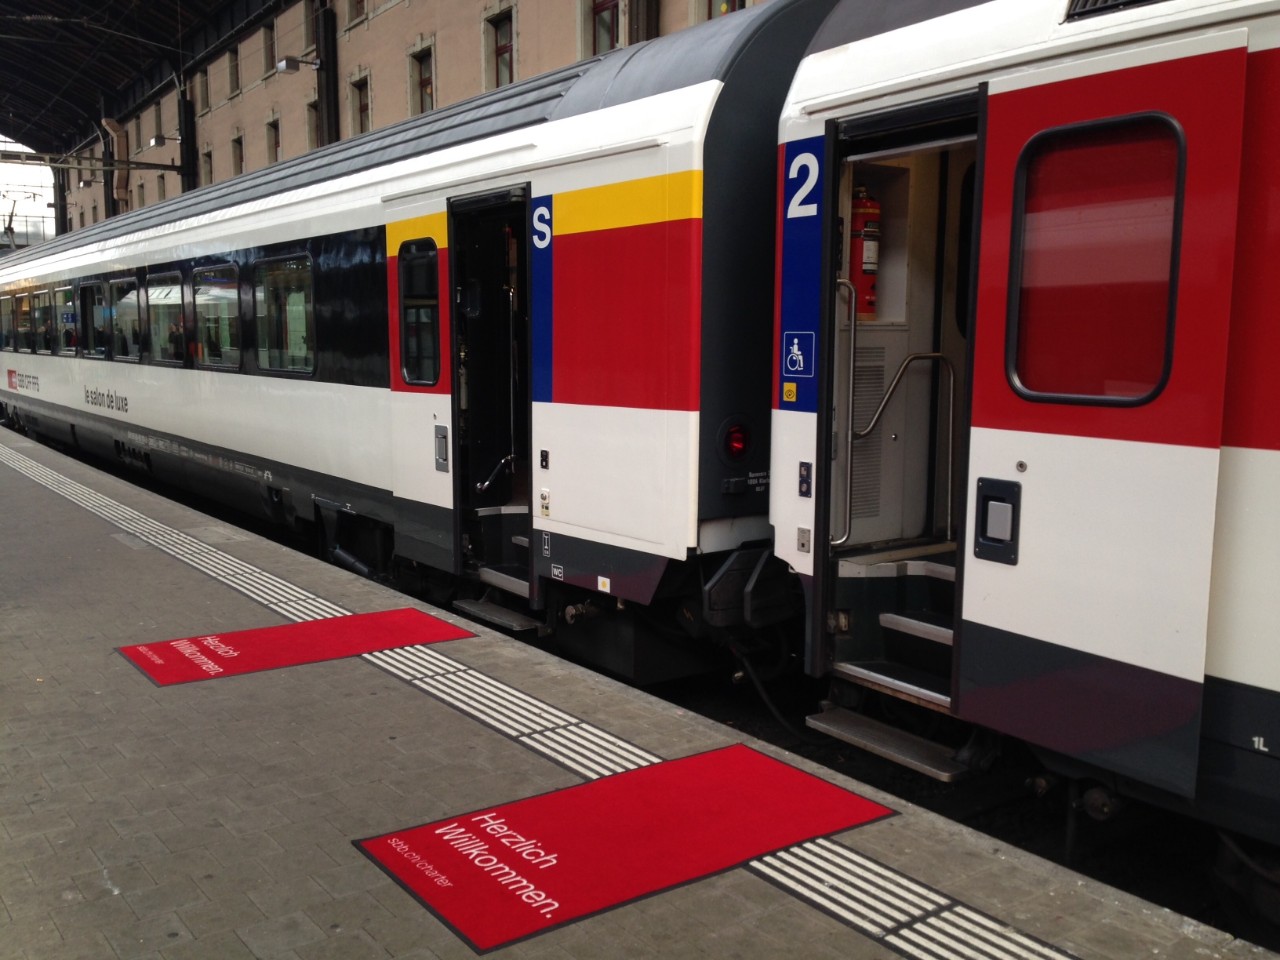 Empfang im Bahnhof mit Rotem Teppich vor dem Extrawagen.